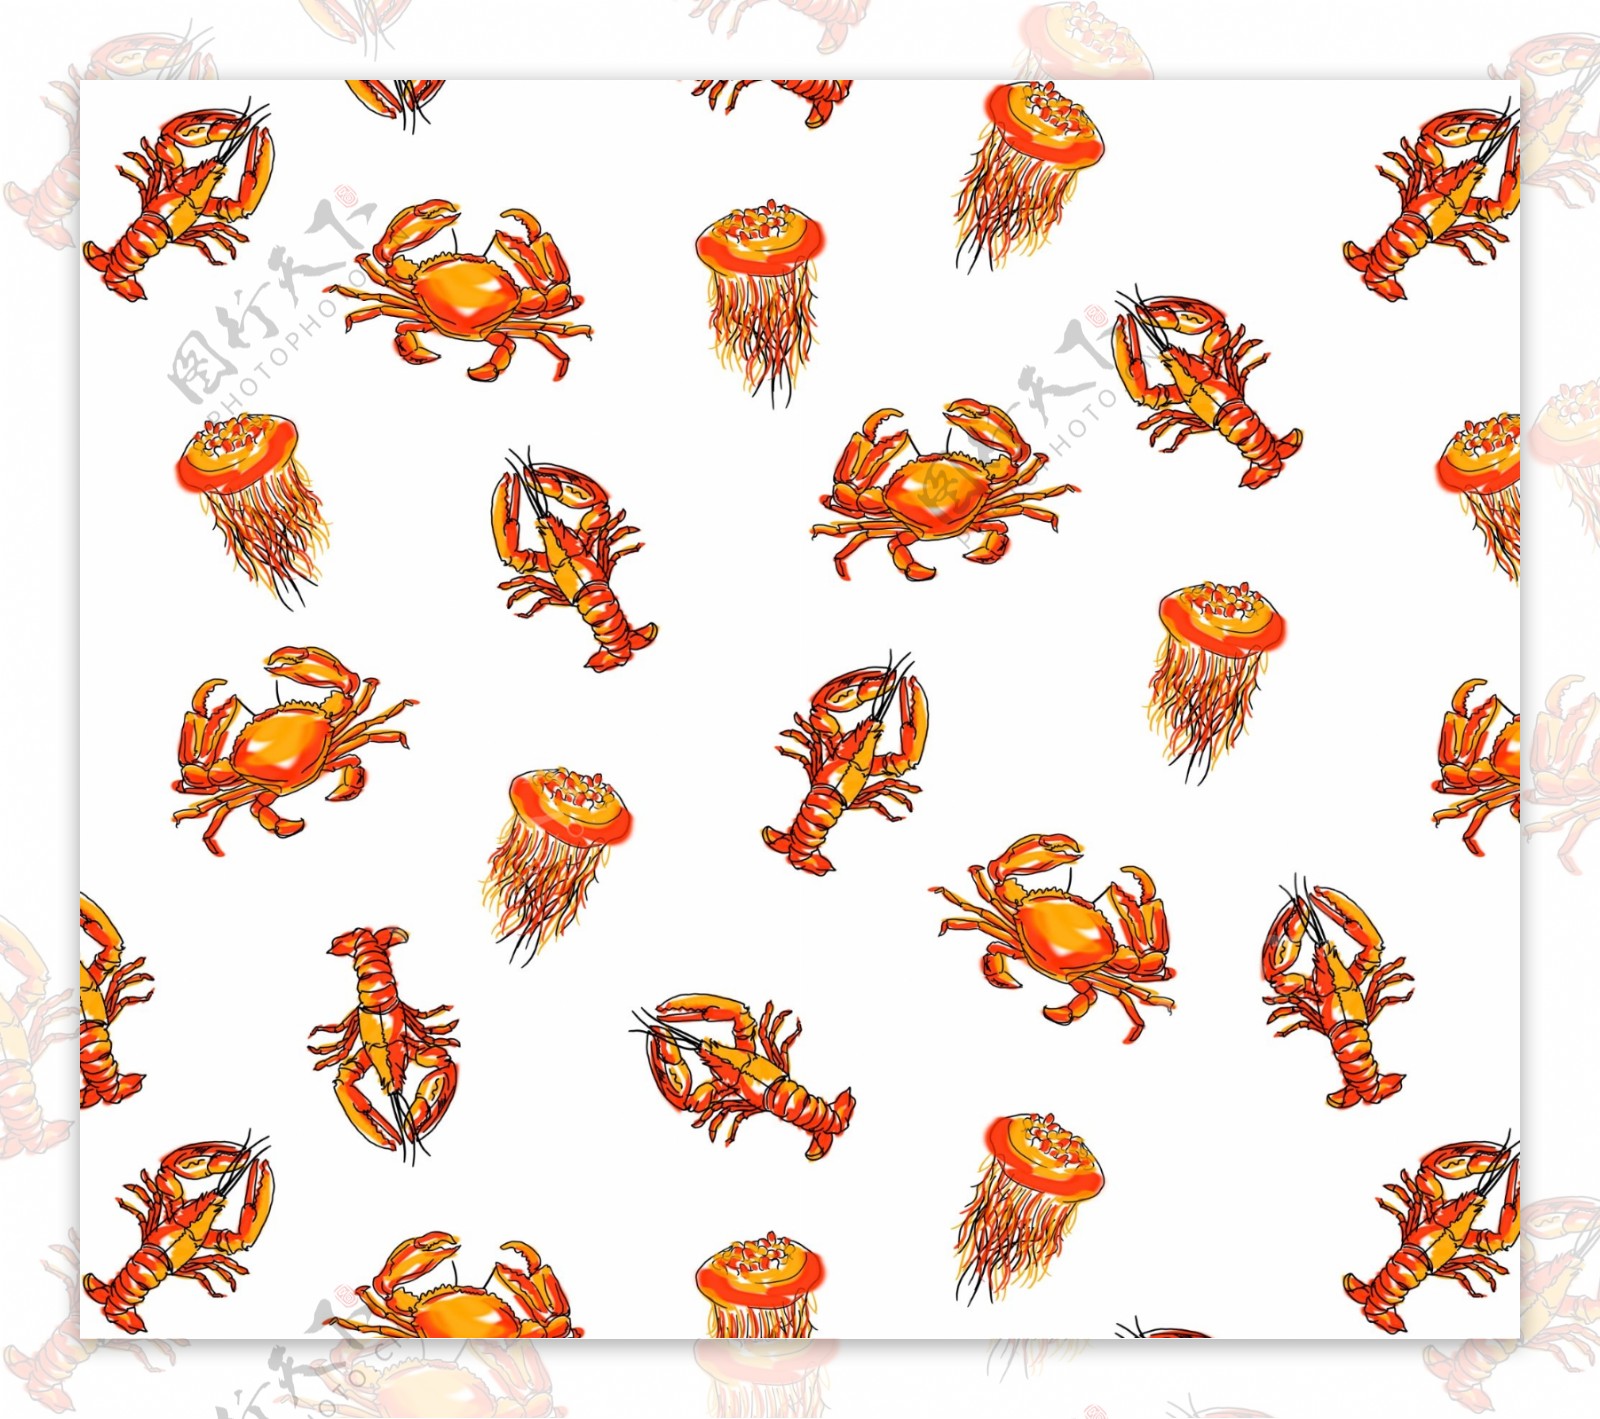 海鲜海洋生物鱼虾蟹四方连续底纹